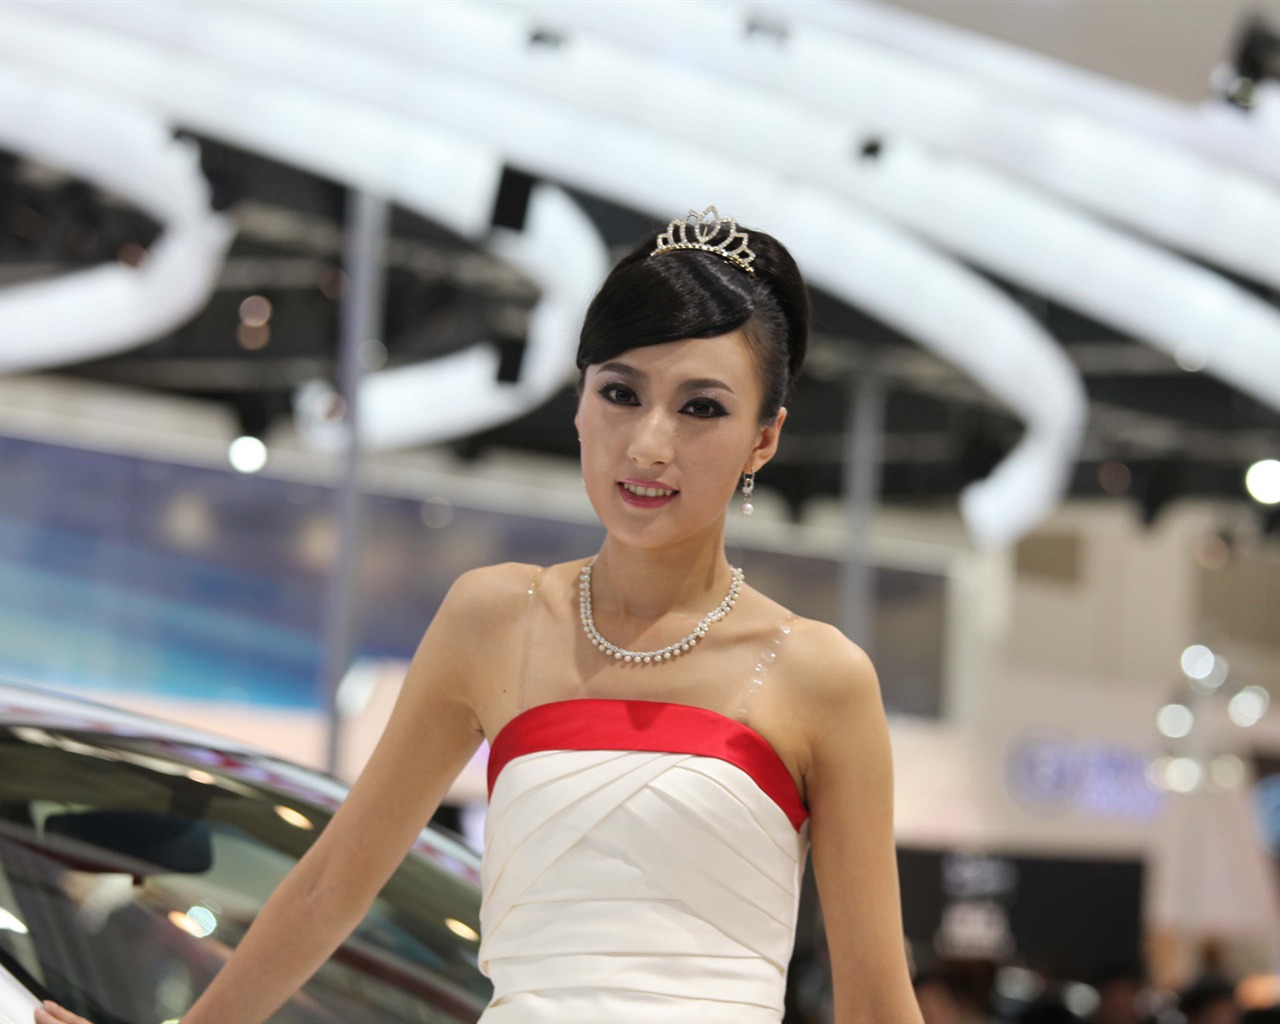 2010 v Pekingu Mezinárodním autosalonu krása (1) (vítr honí mraky práce) #27 - 1280x1024